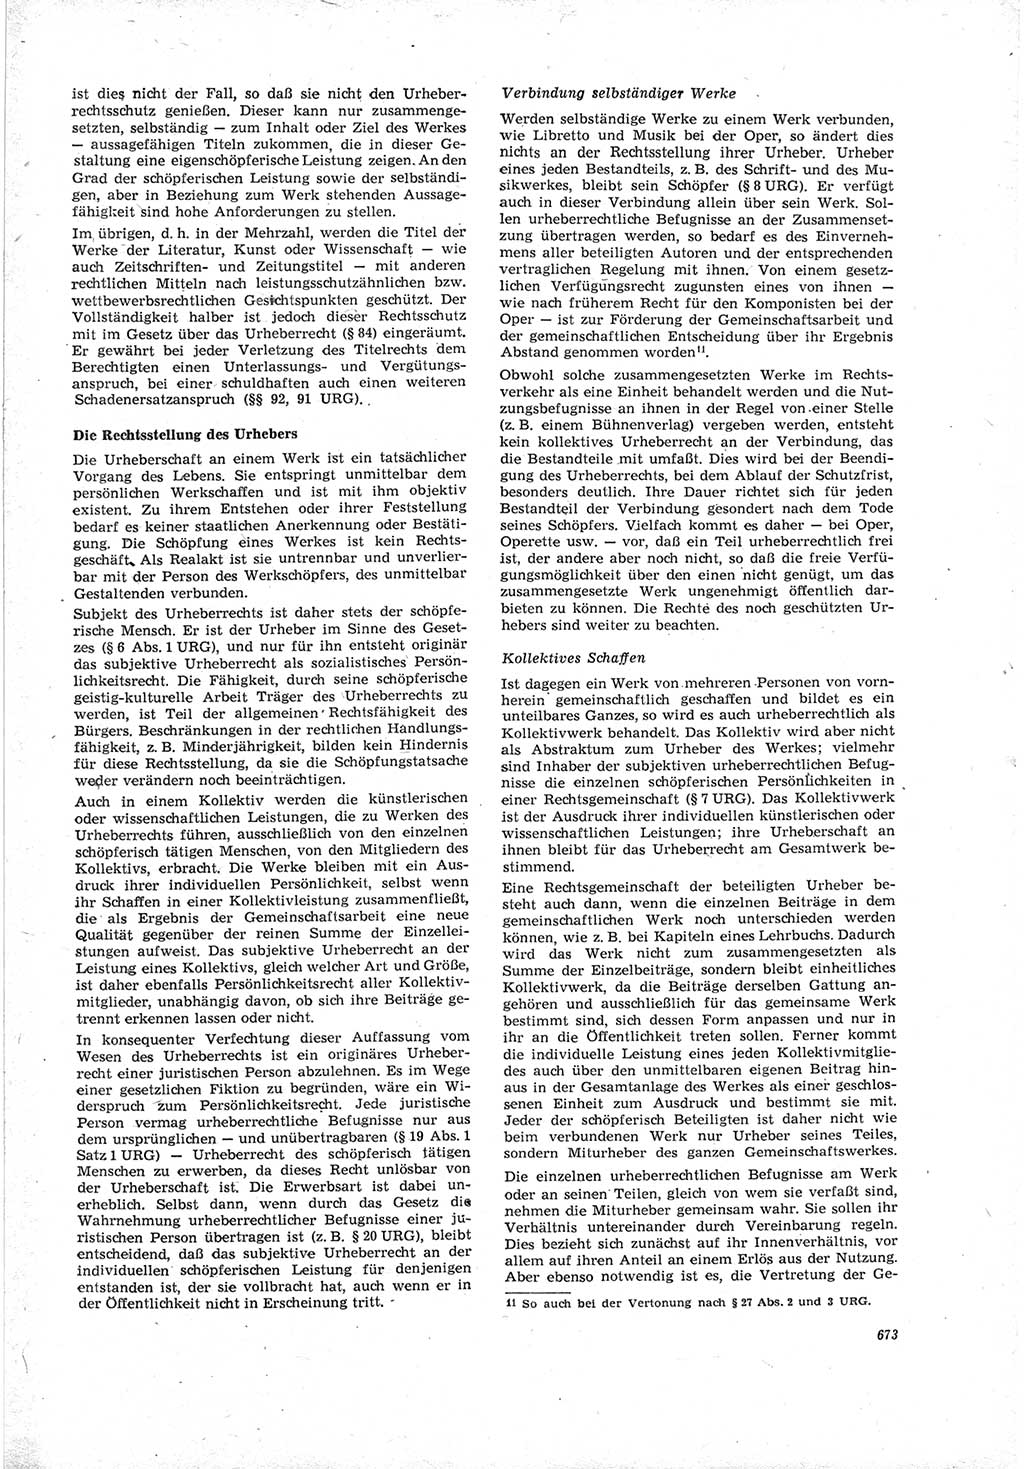 Neue Justiz (NJ), Zeitschrift für Recht und Rechtswissenschaft [Deutsche Demokratische Republik (DDR)], 19. Jahrgang 1965, Seite 673 (NJ DDR 1965, S. 673)